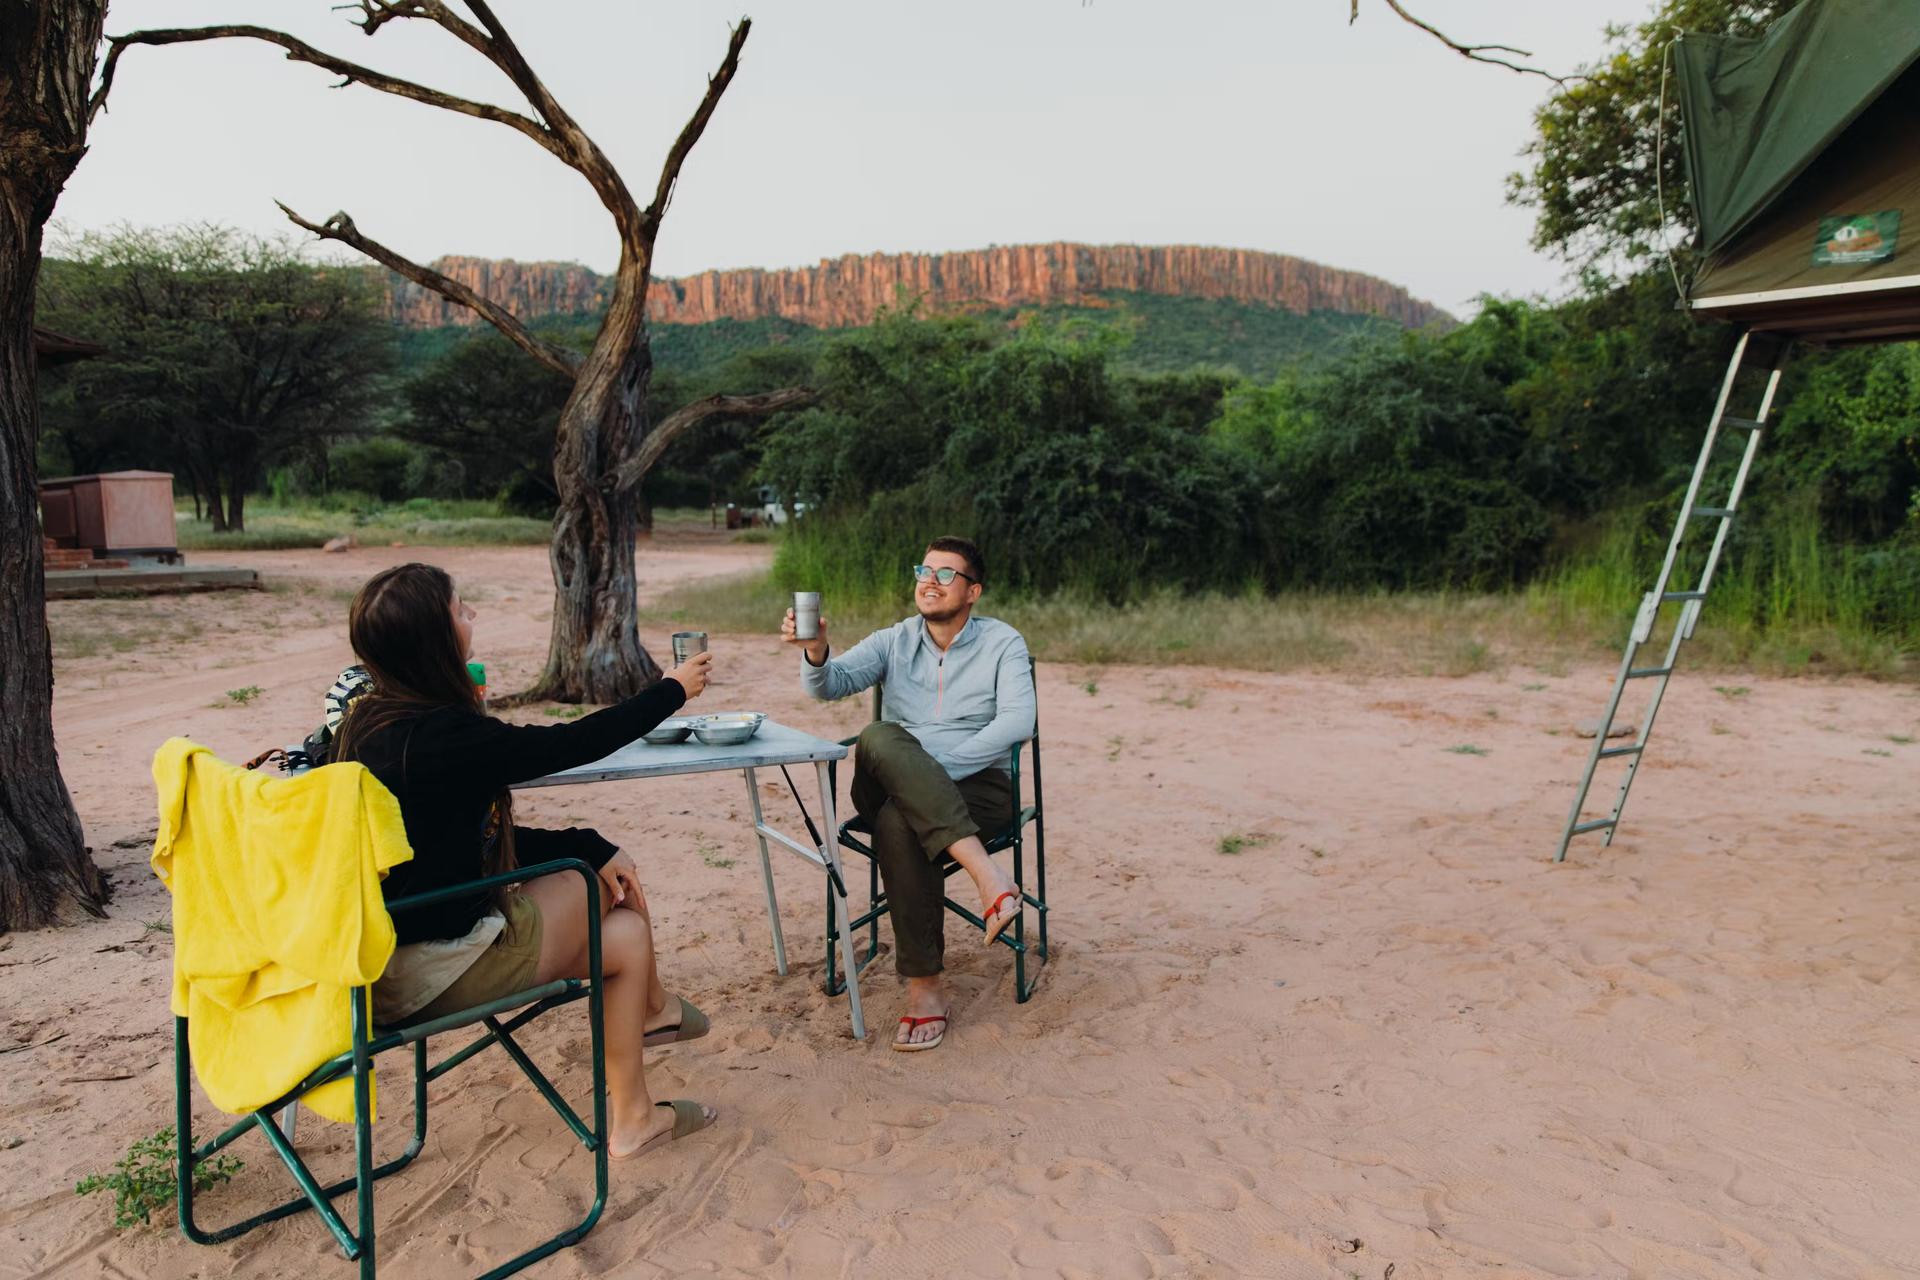 Två resenärer skålar på sin camping i Namibia